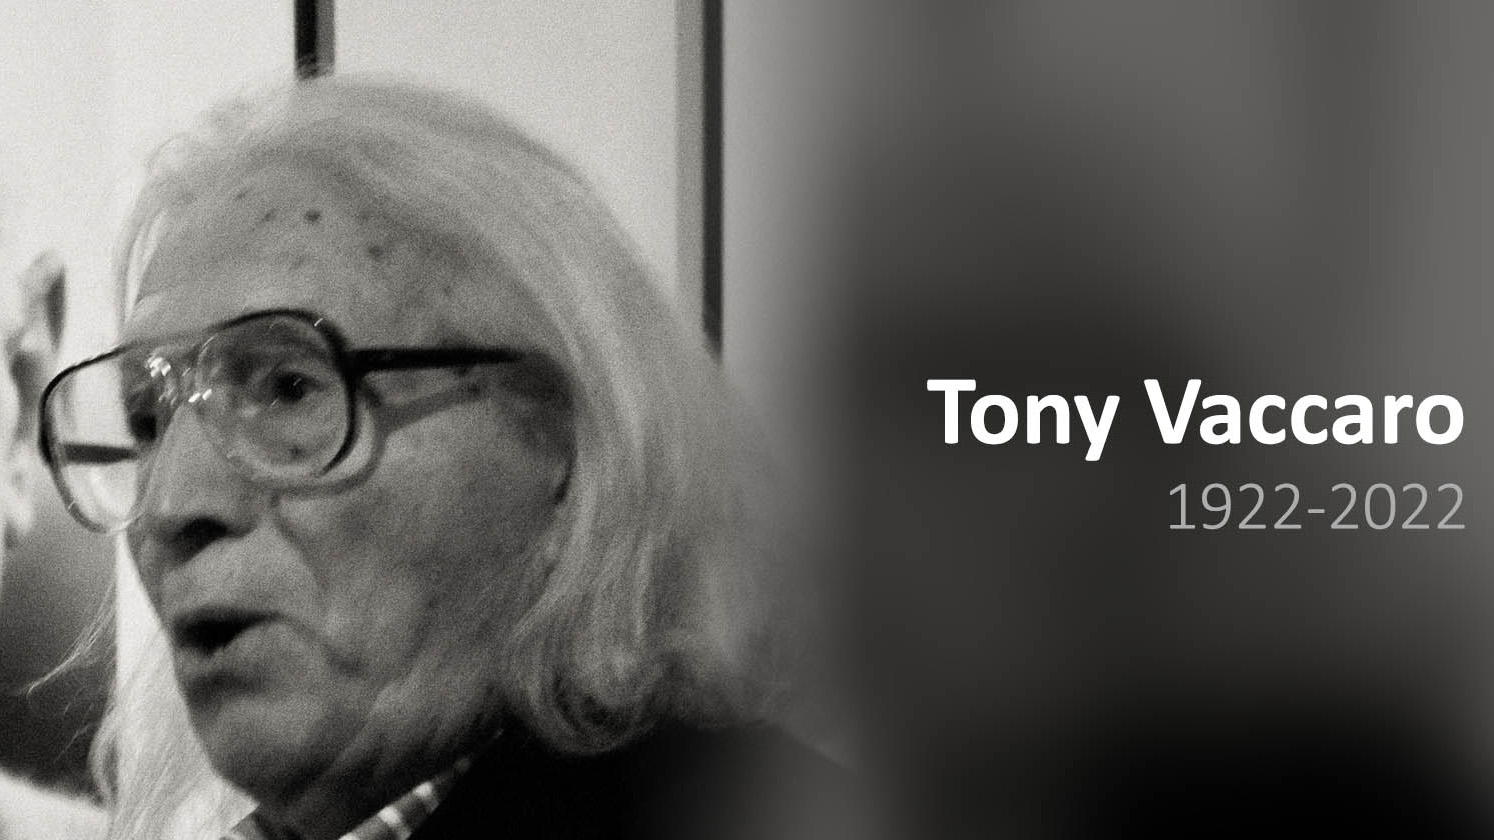 Unlu Ikinci Dunya Savasi ve Moda Fotografcisi Tony Vaccaro 100 yasinda oldu